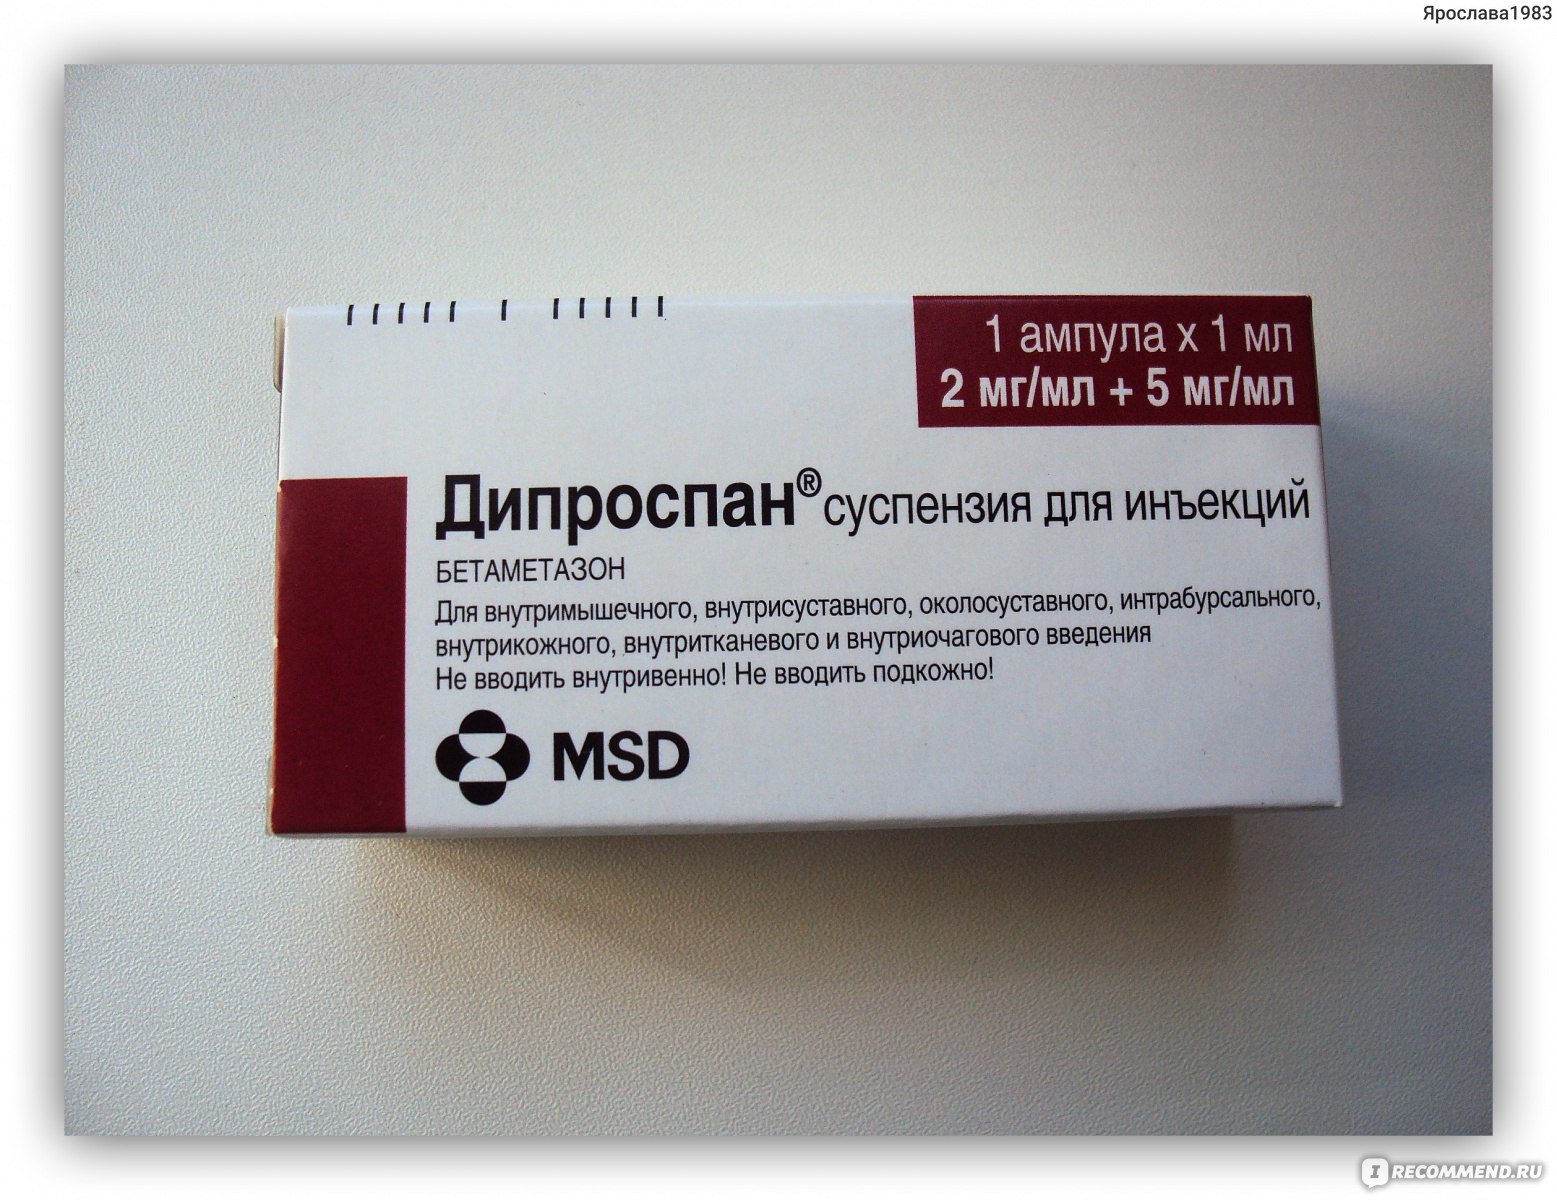 Где В Москве Можно Купить Лекарство Дипроспан